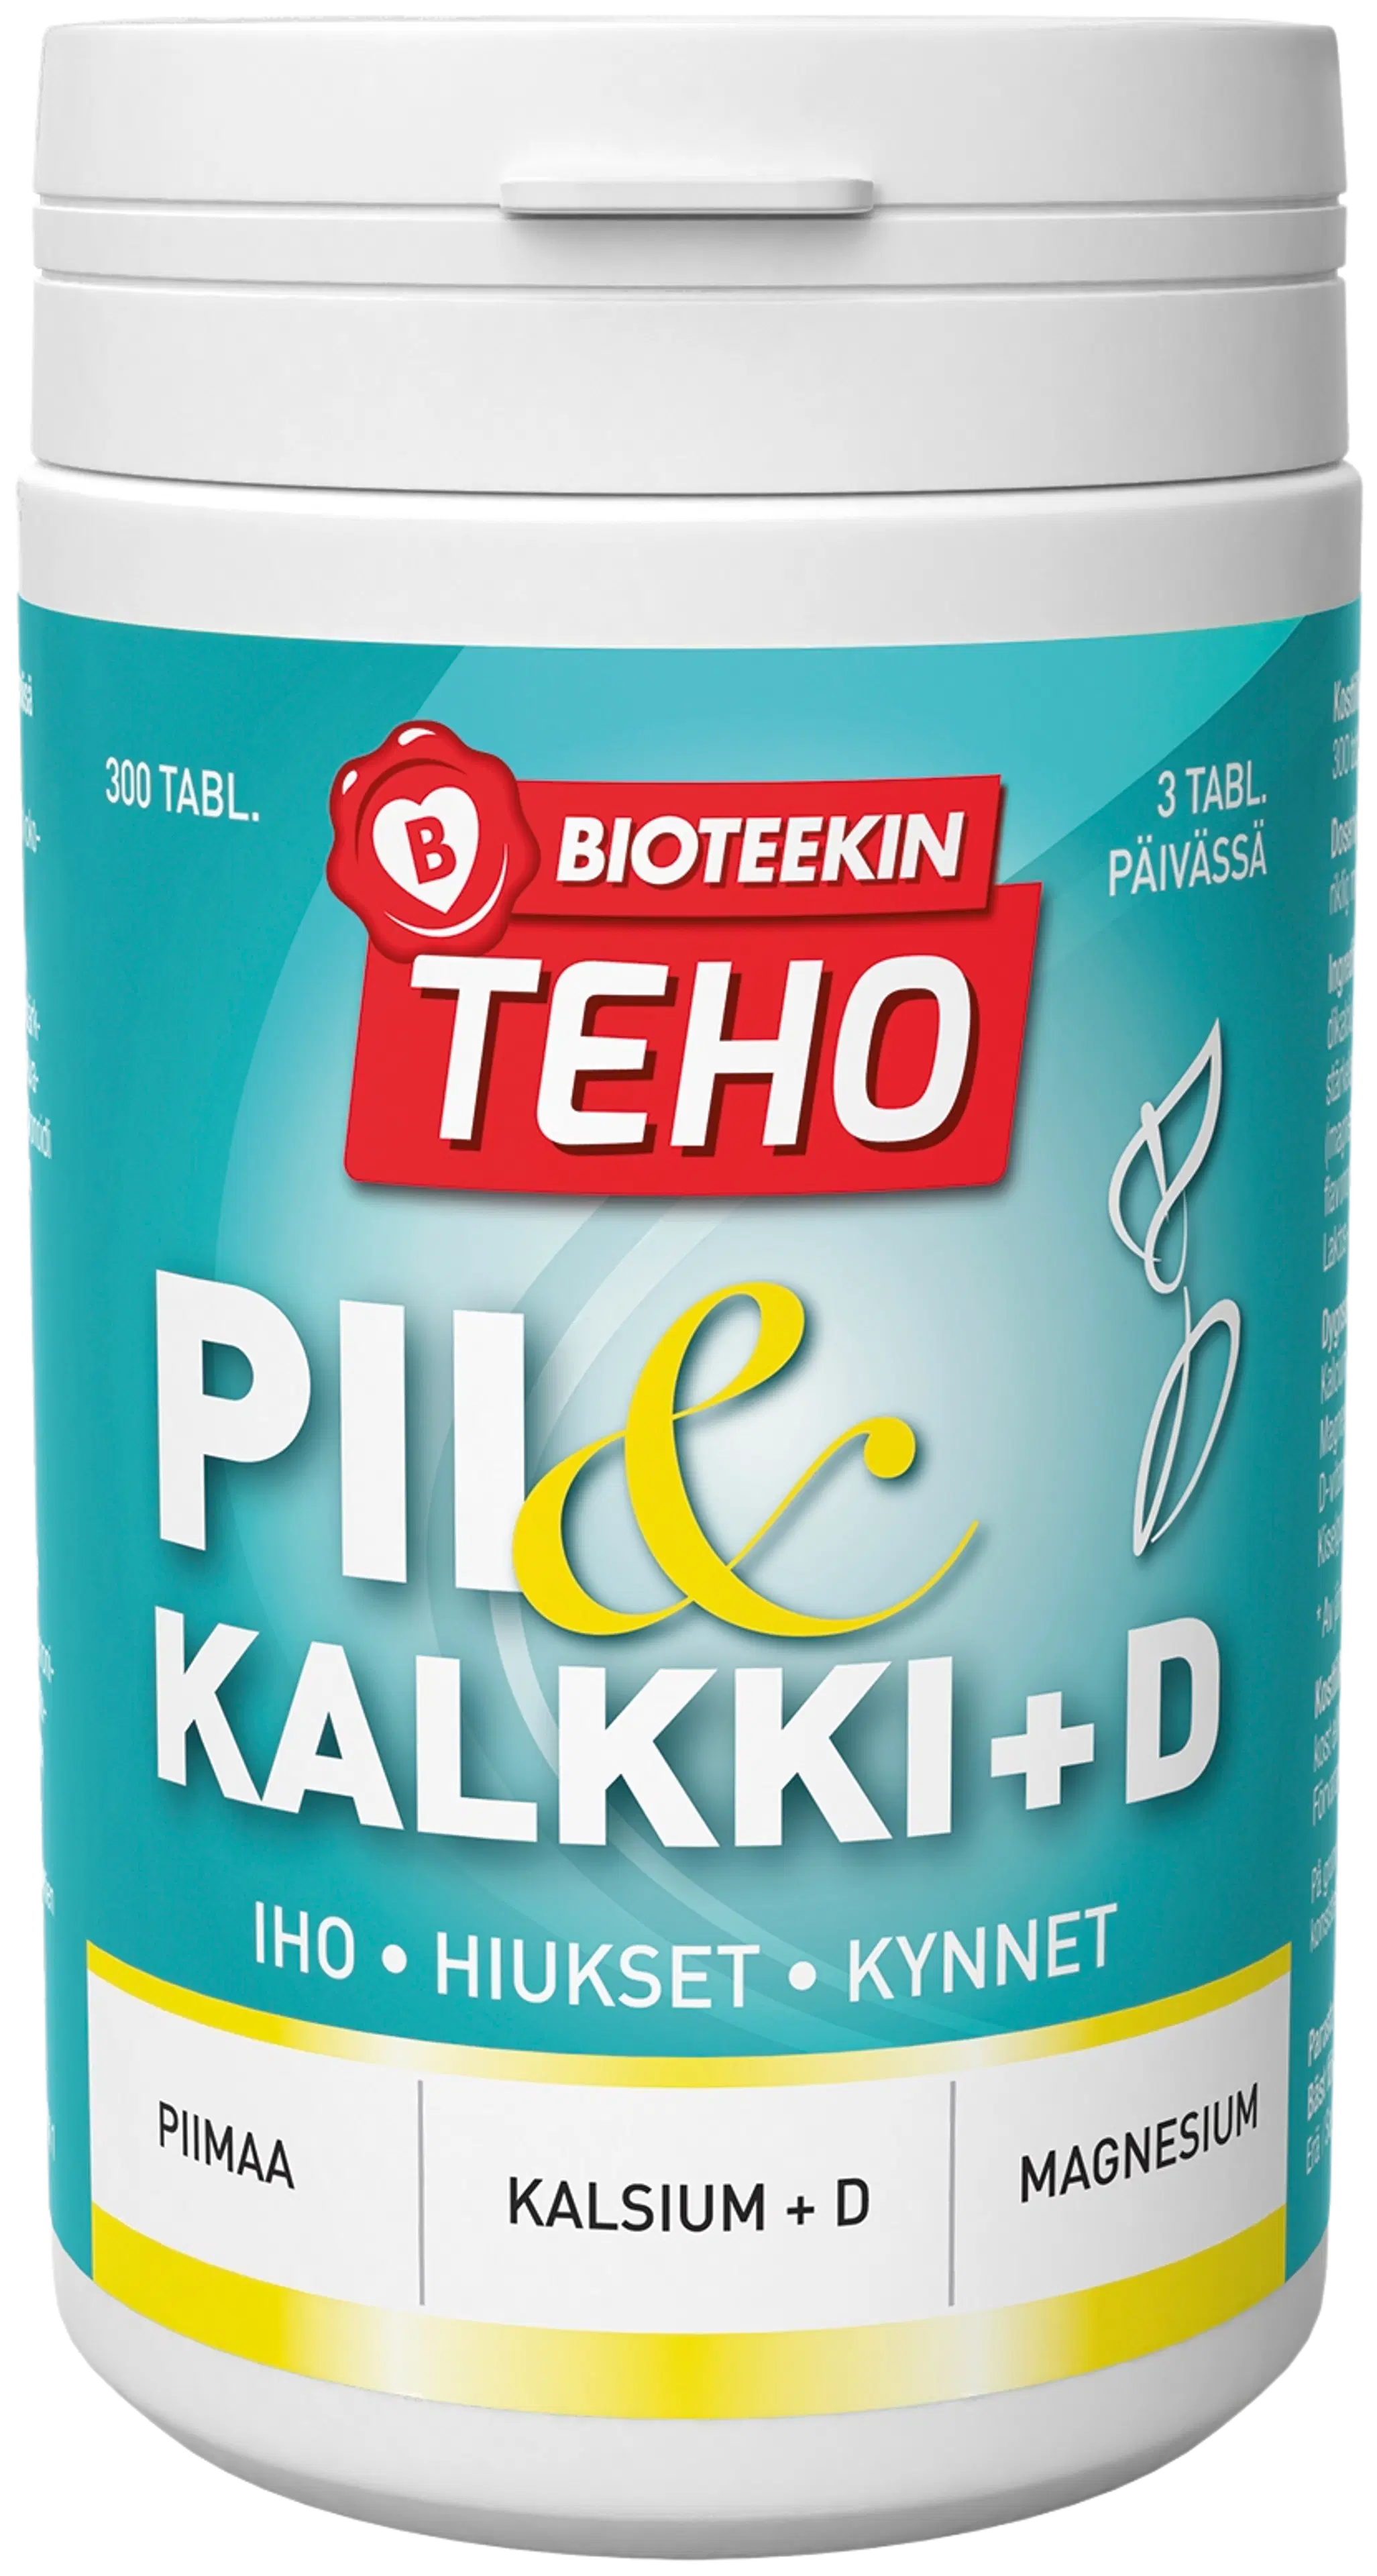 Bioteekki Teho Pii & Kalkki + D ravintolisä 300 tabl.